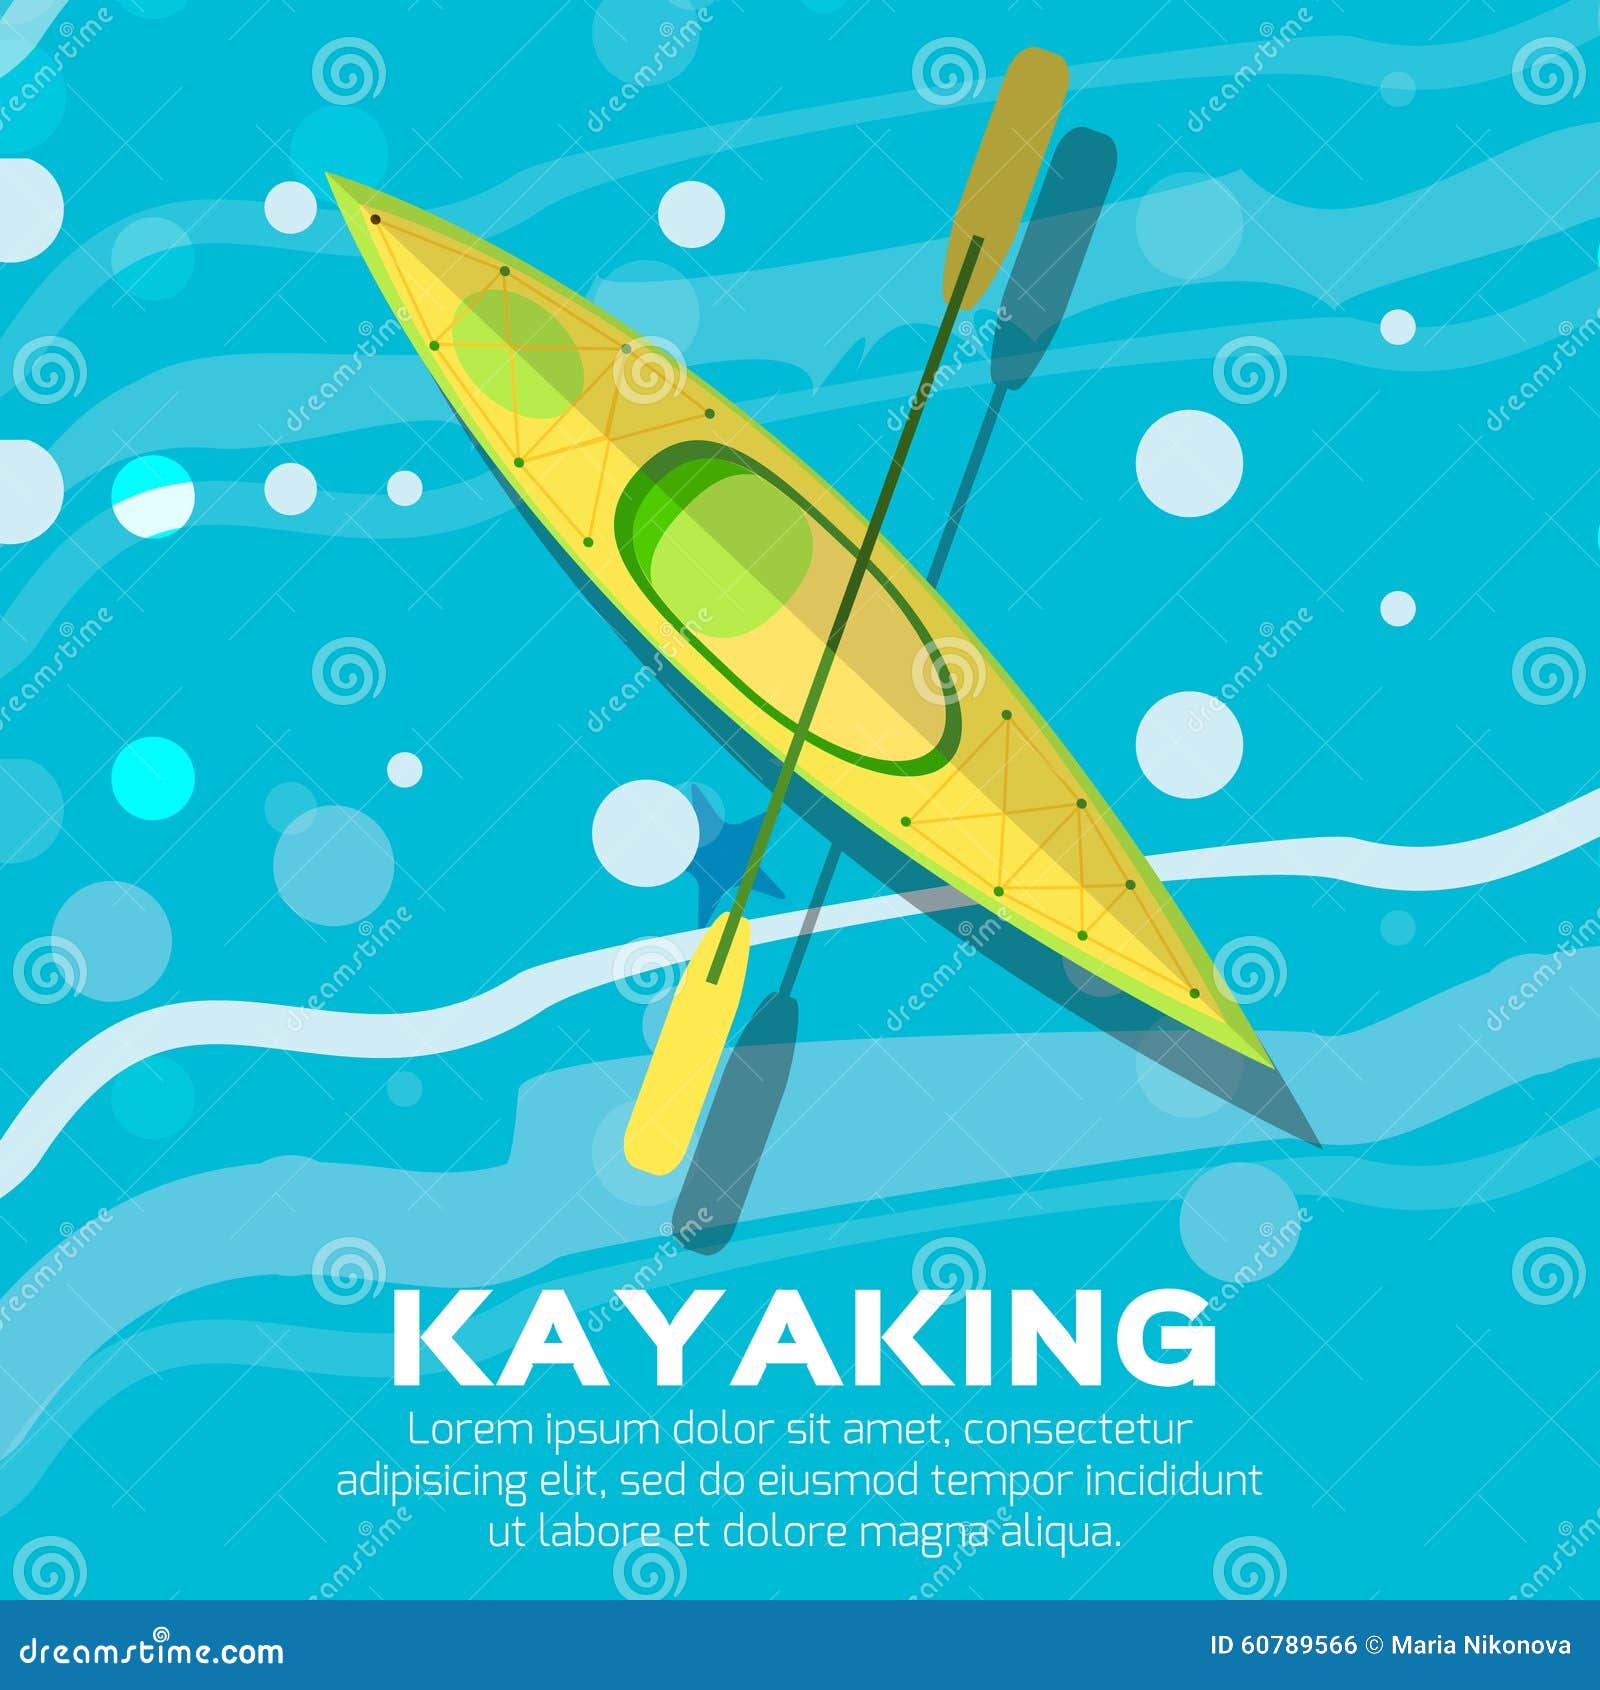 sea kayaking clipart - photo #35